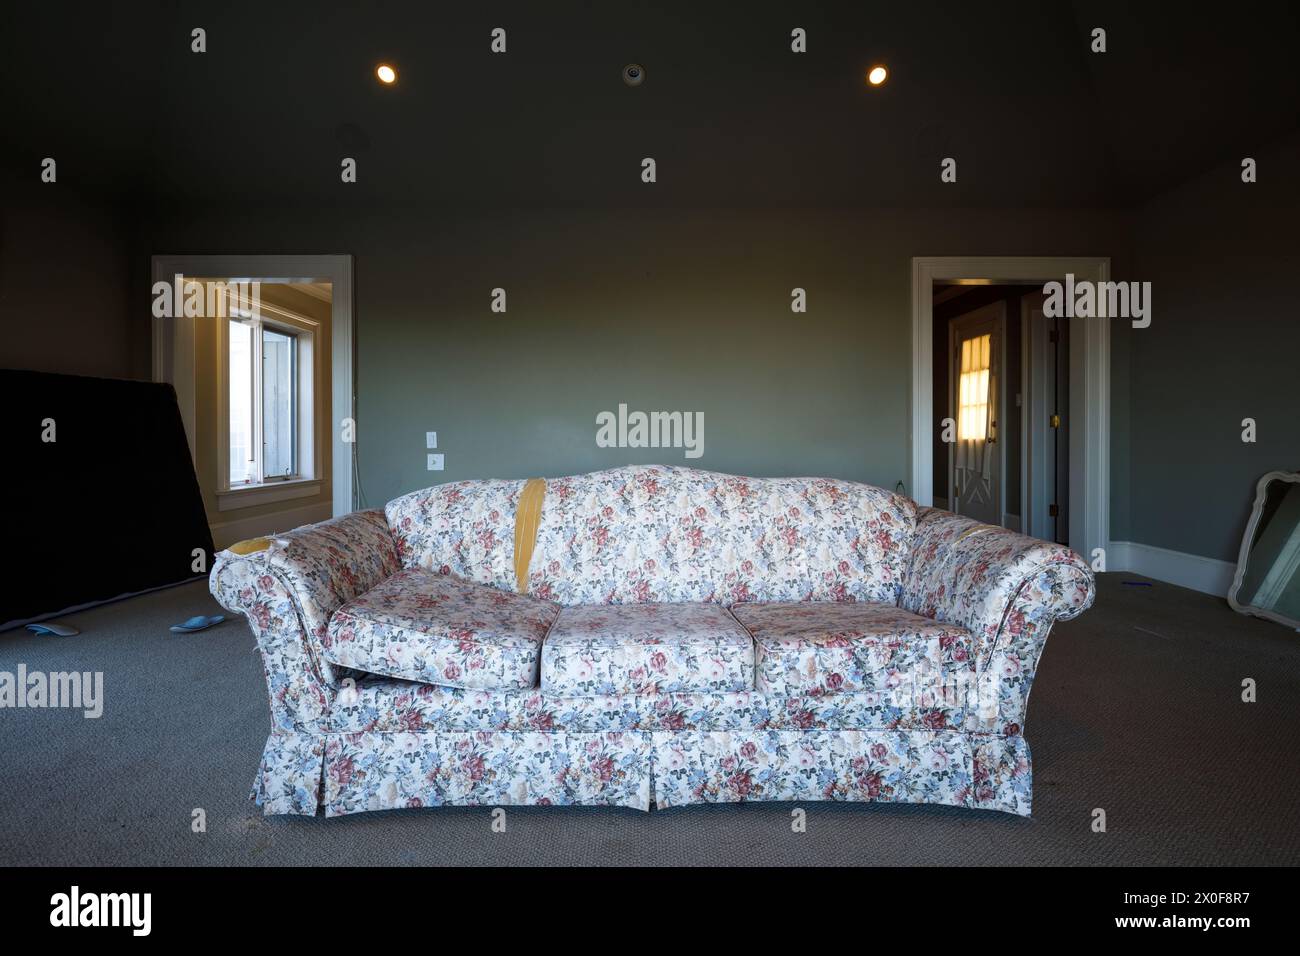 Eine Couch in einem grünen Raum in einem verlassenen Haus. Stockfoto